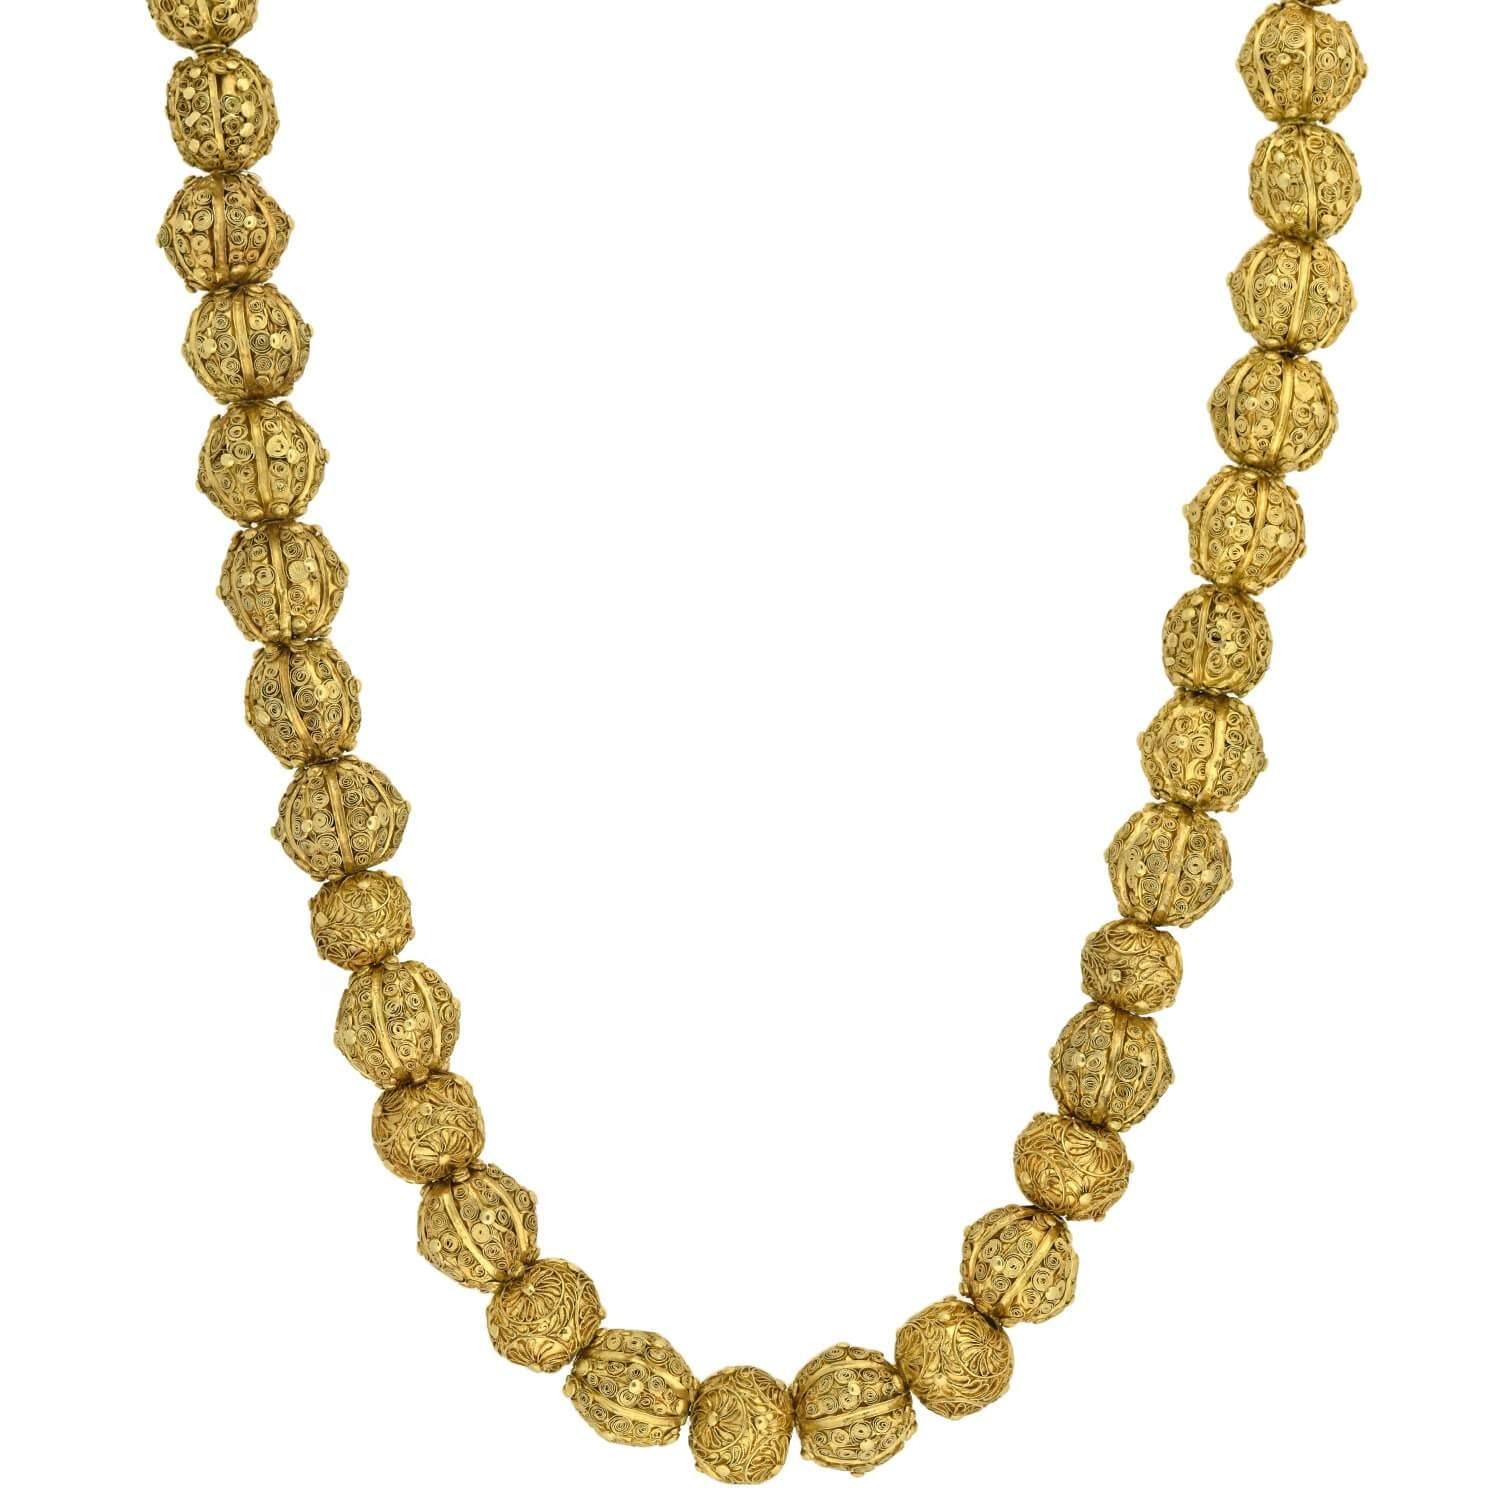 Eine außergewöhnlich schöne und sehr seltene Perlenkette aus der georgianischen Epoche (um 1750)! Dieses lebhafte Stück aus 22-karätigem Gelbgold besteht aus 43 handgefertigten Perlen, die mit kunstvollen Drahtarbeiten verziert sind, und stammt